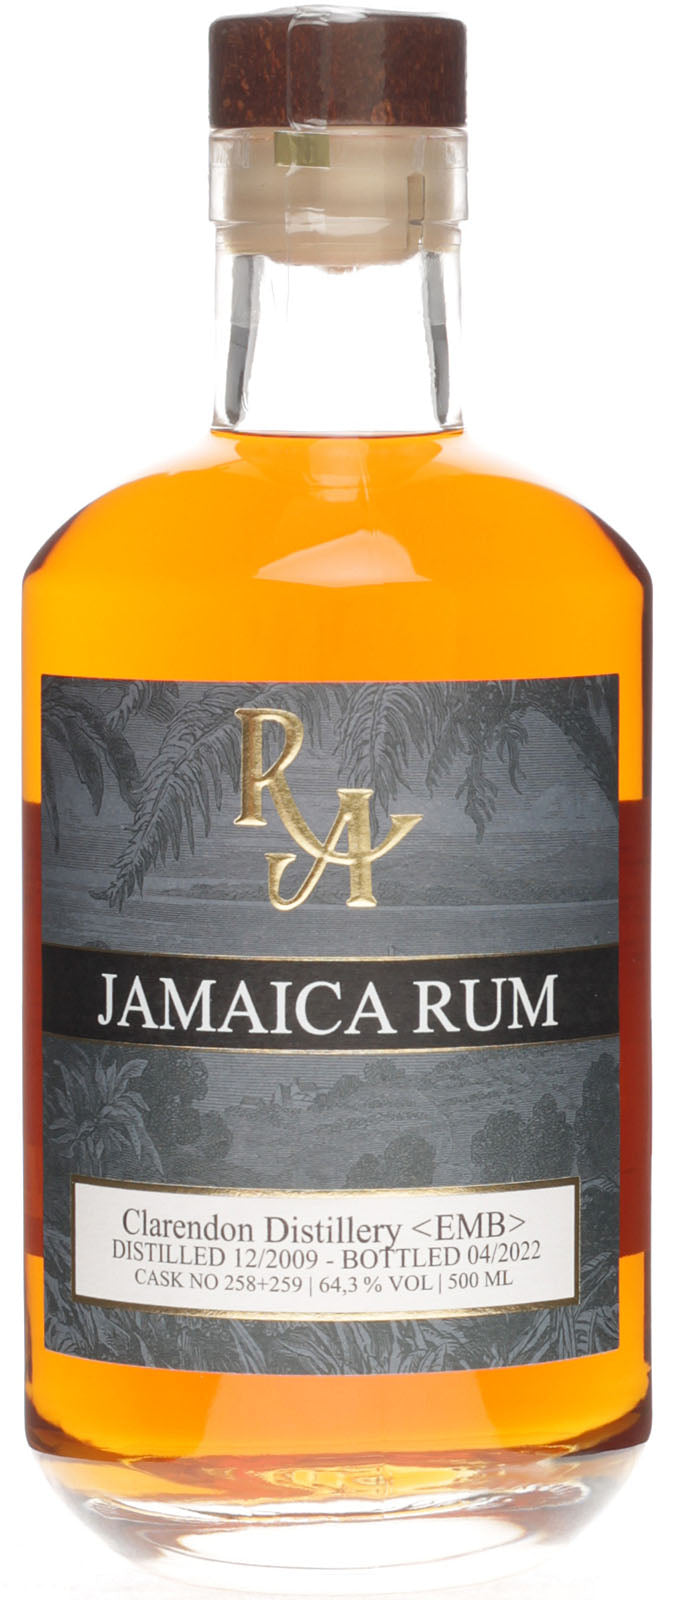 Rum Artesanal Jamaica Rum Clarendon 2009 - 0.5l Flasche - TRY IT! Tastings